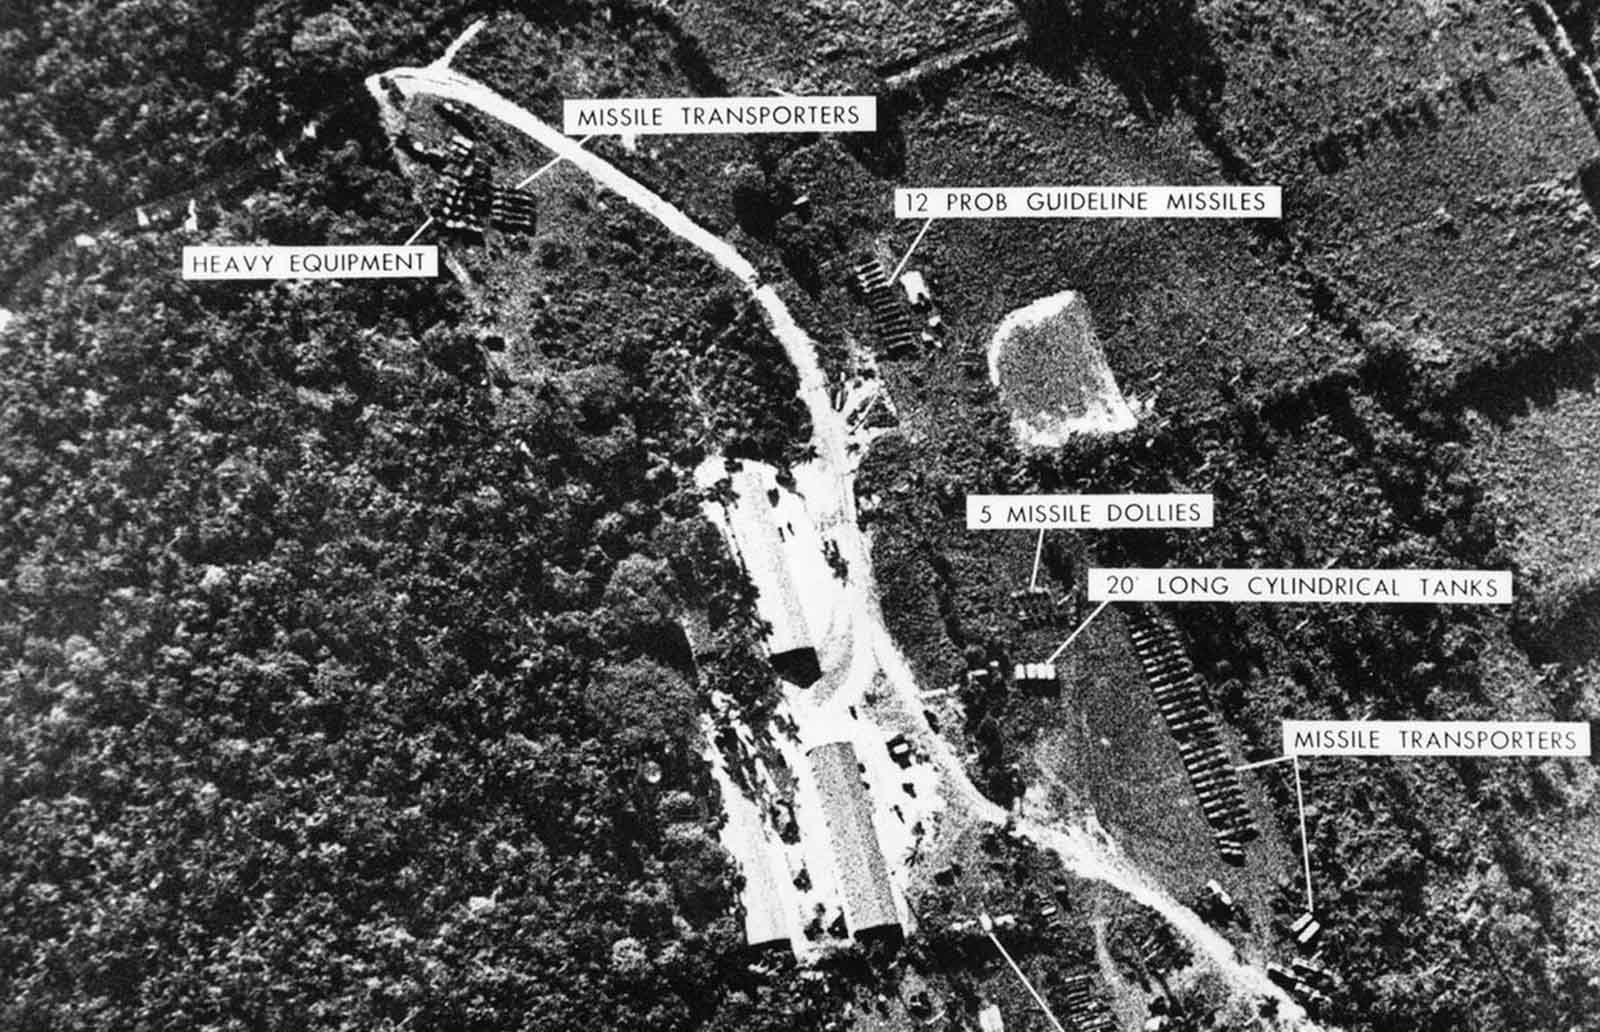 La Crise des Missiles de cuba en images, 1962